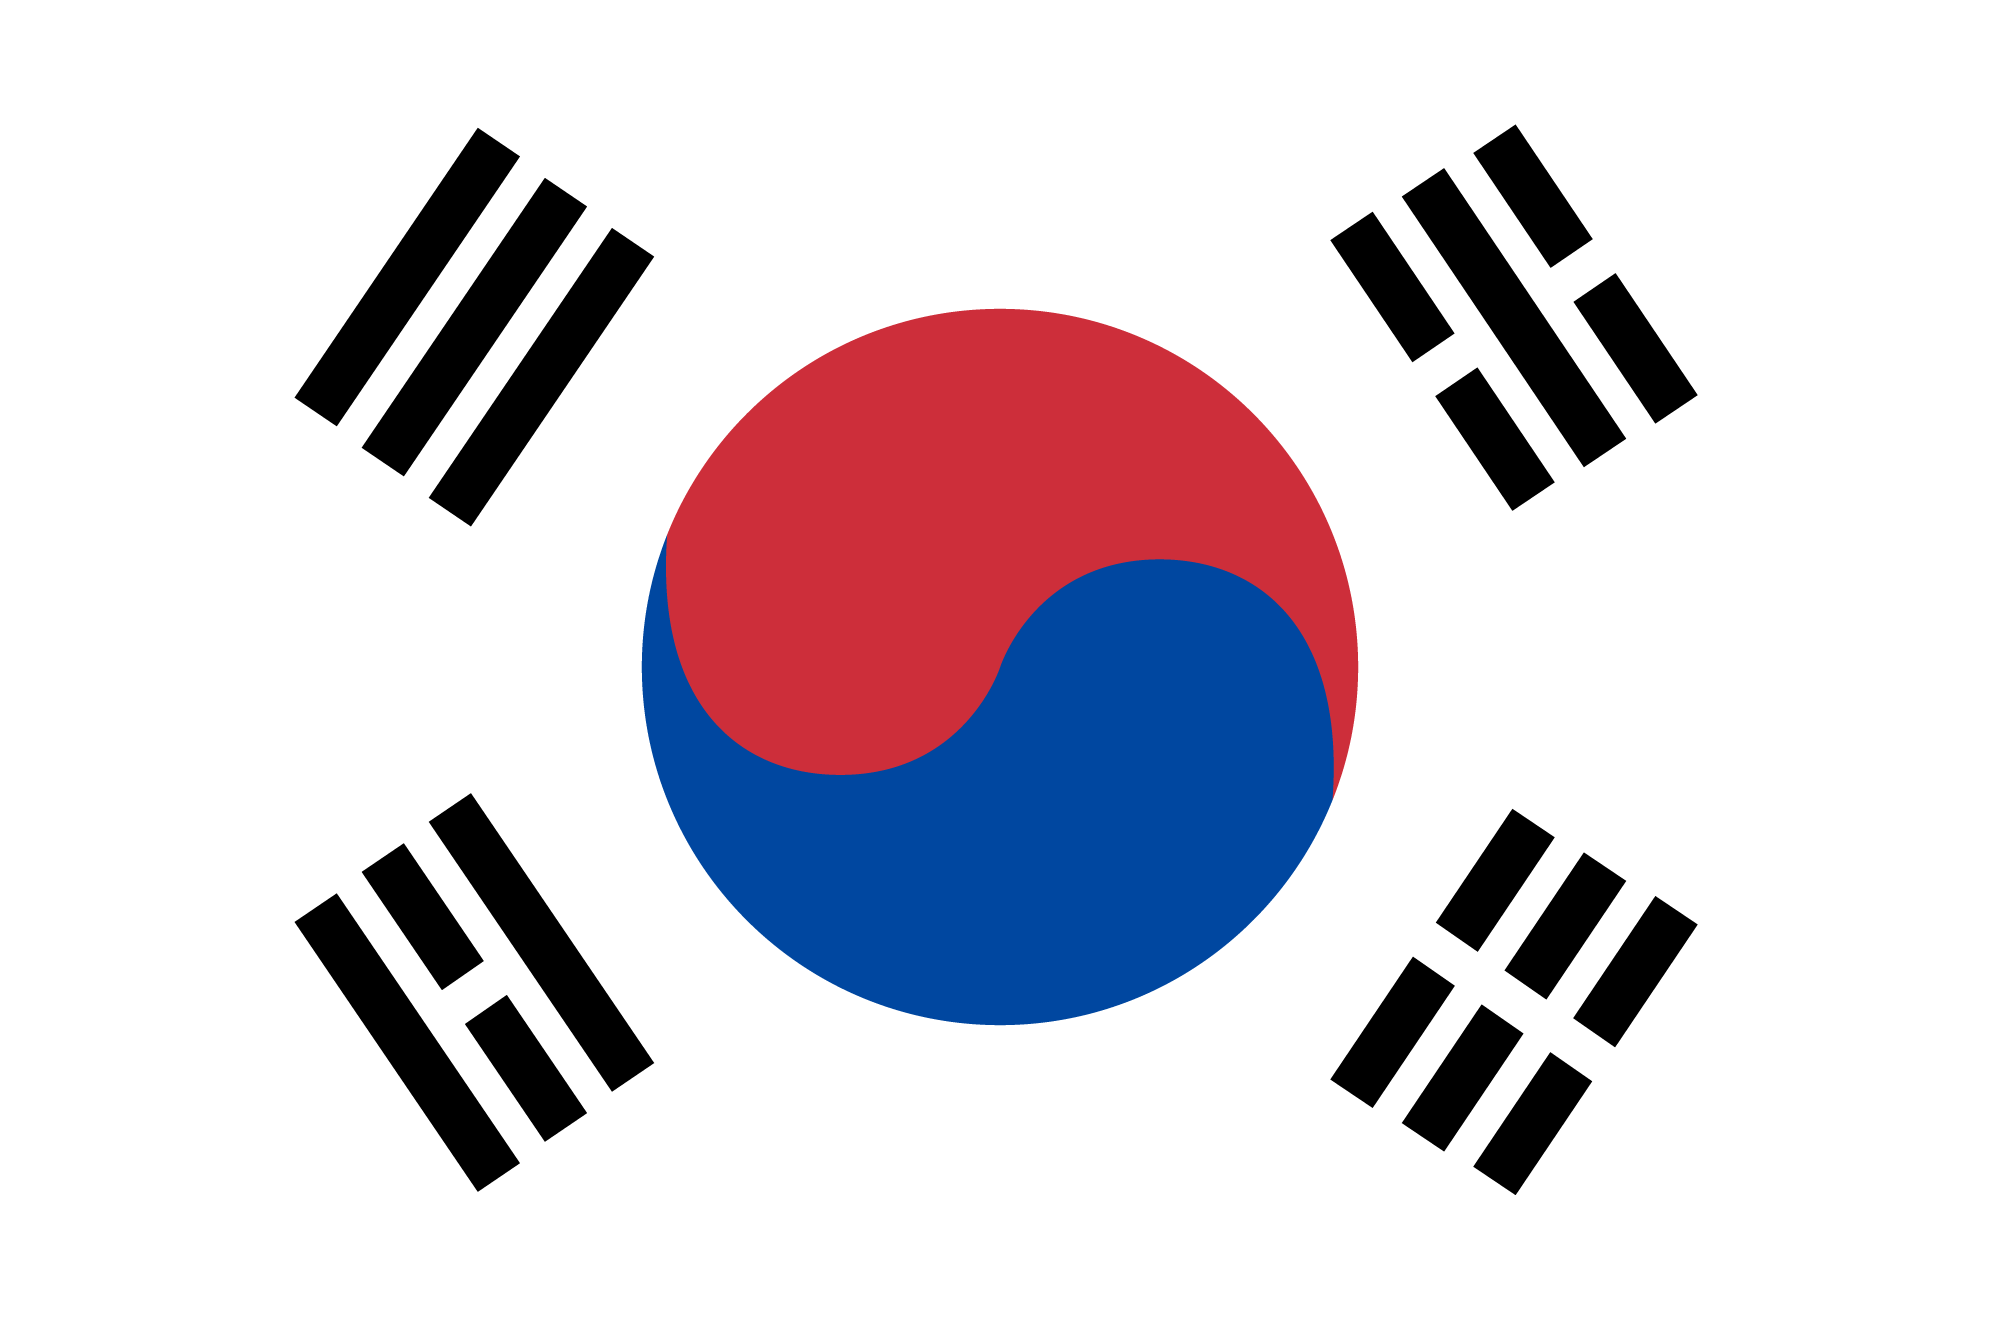 KOREA FLAG